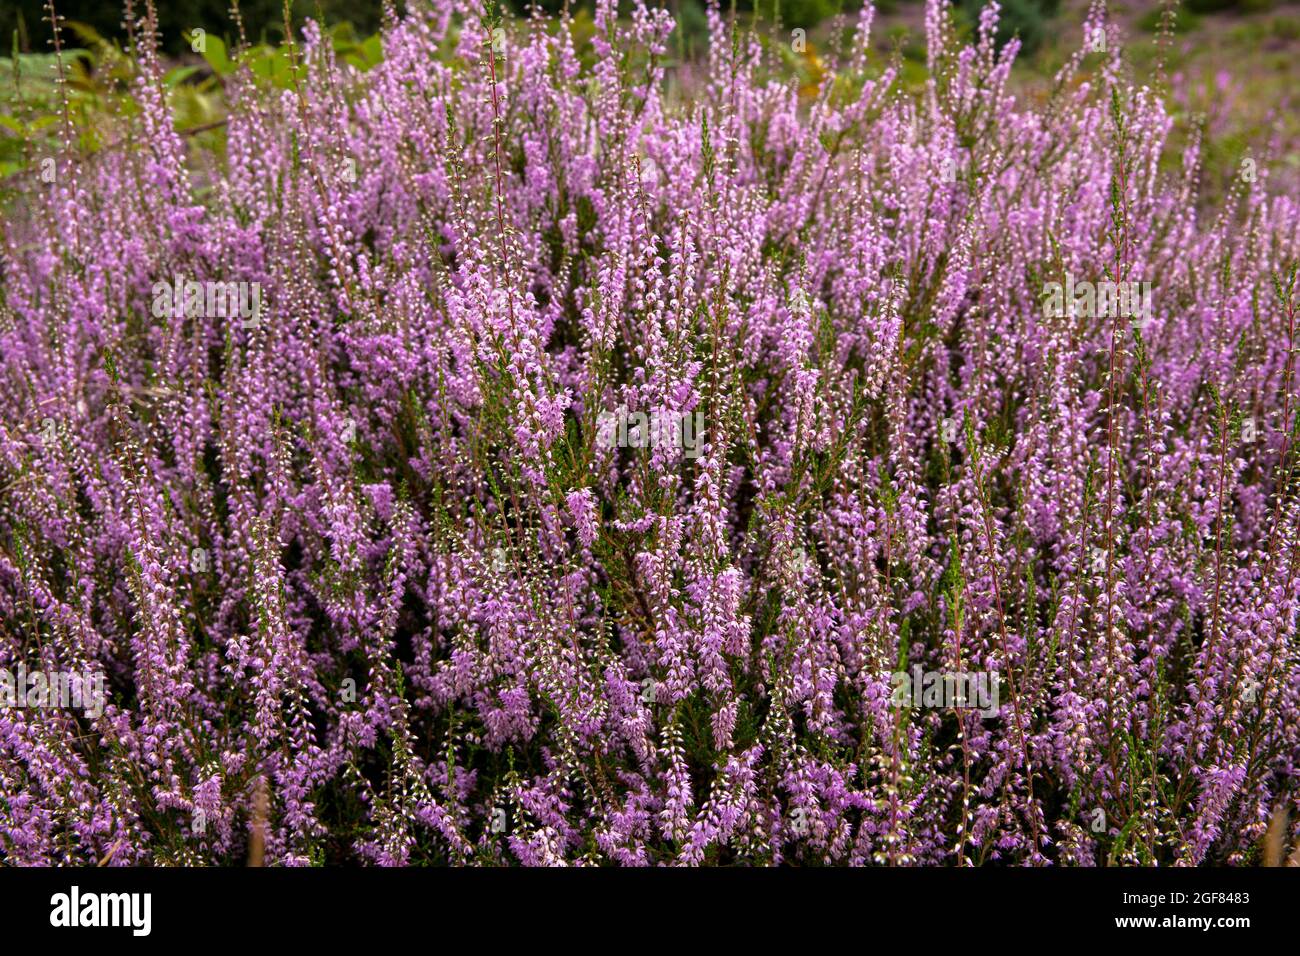 Erica comune fiorita (Calluna vulgaris) nella brughiera di Wahner sulla collina di Fliegenberg, Troisdorf, Renania settentrionale-Vestfalia, Germania. Bluehende Besenheide Foto Stock